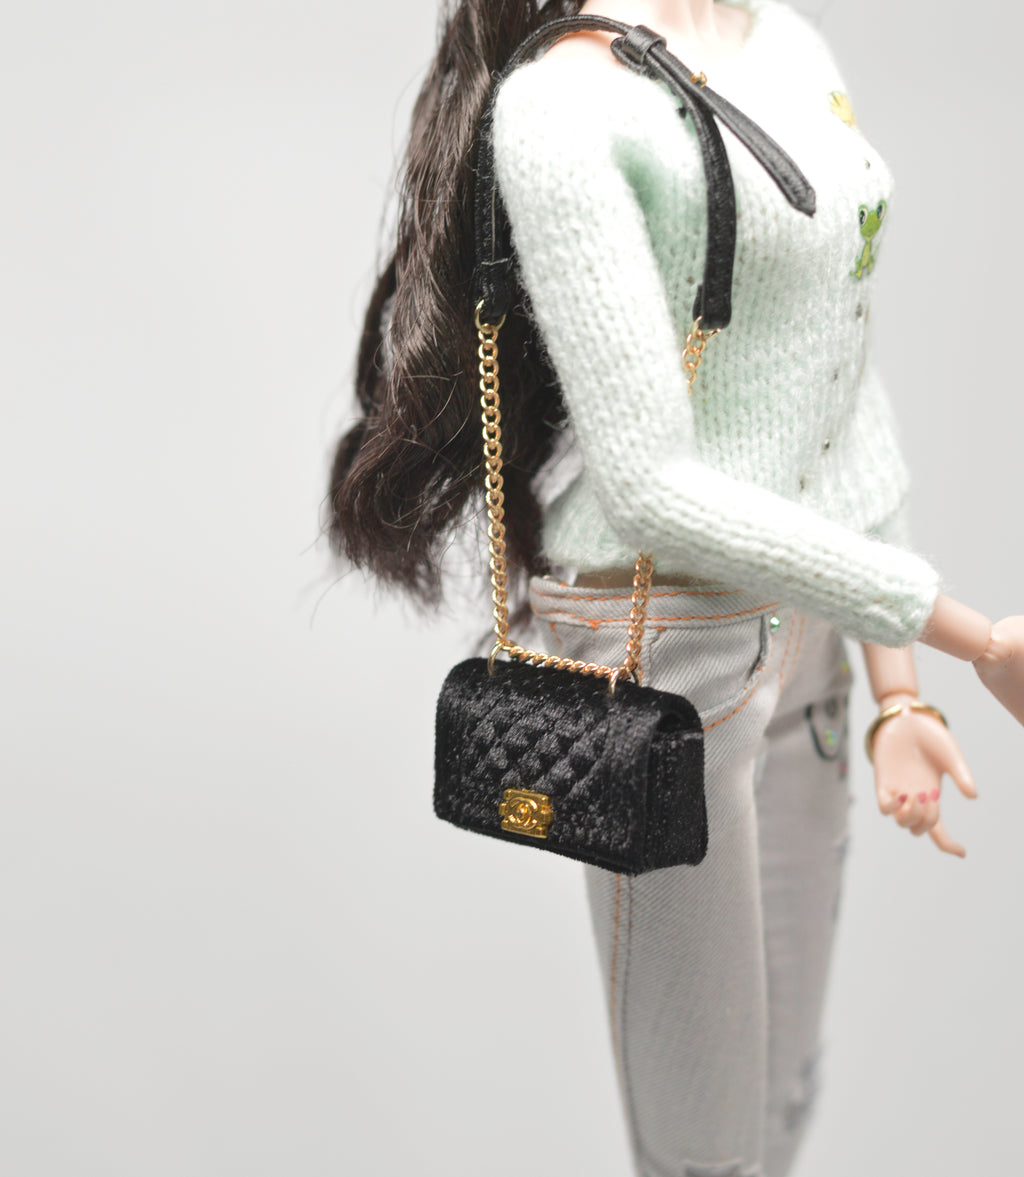 Gucci Inspired Miniature Purse Doll Barbie Ooak 